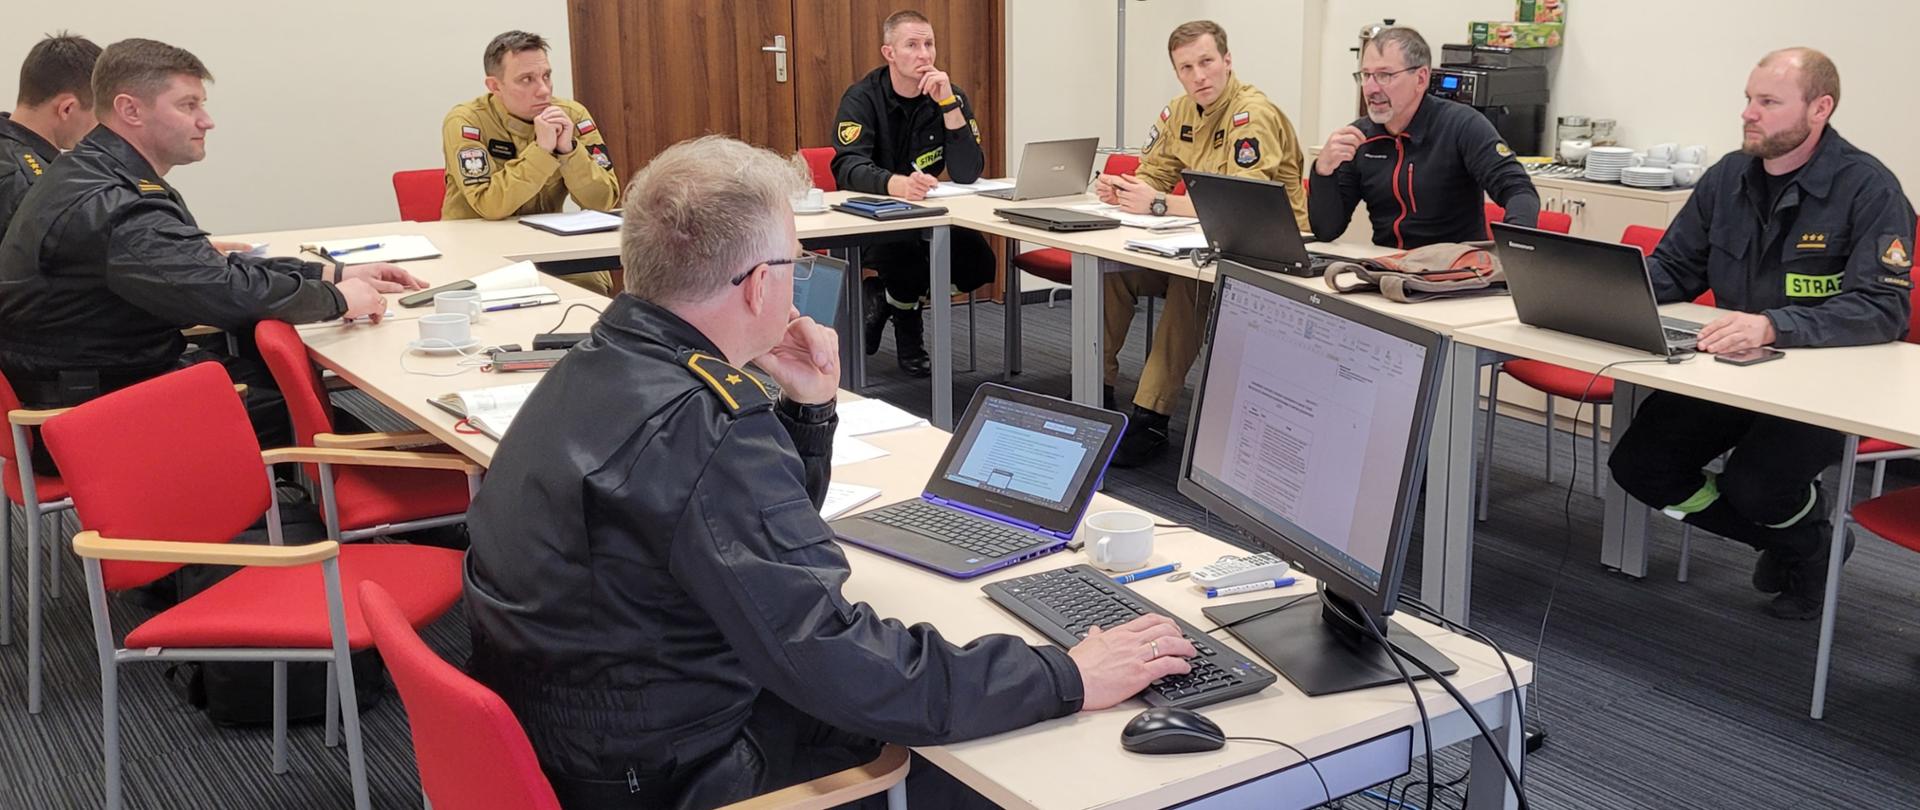 Na zdjęciu widać 8 strażaków państwowej straży pożarnej siedzących przy stole wraz z zastępcą dyrektora Biura Planowania Operacyjnego KG PSP. Na stole monitory i laptopy.